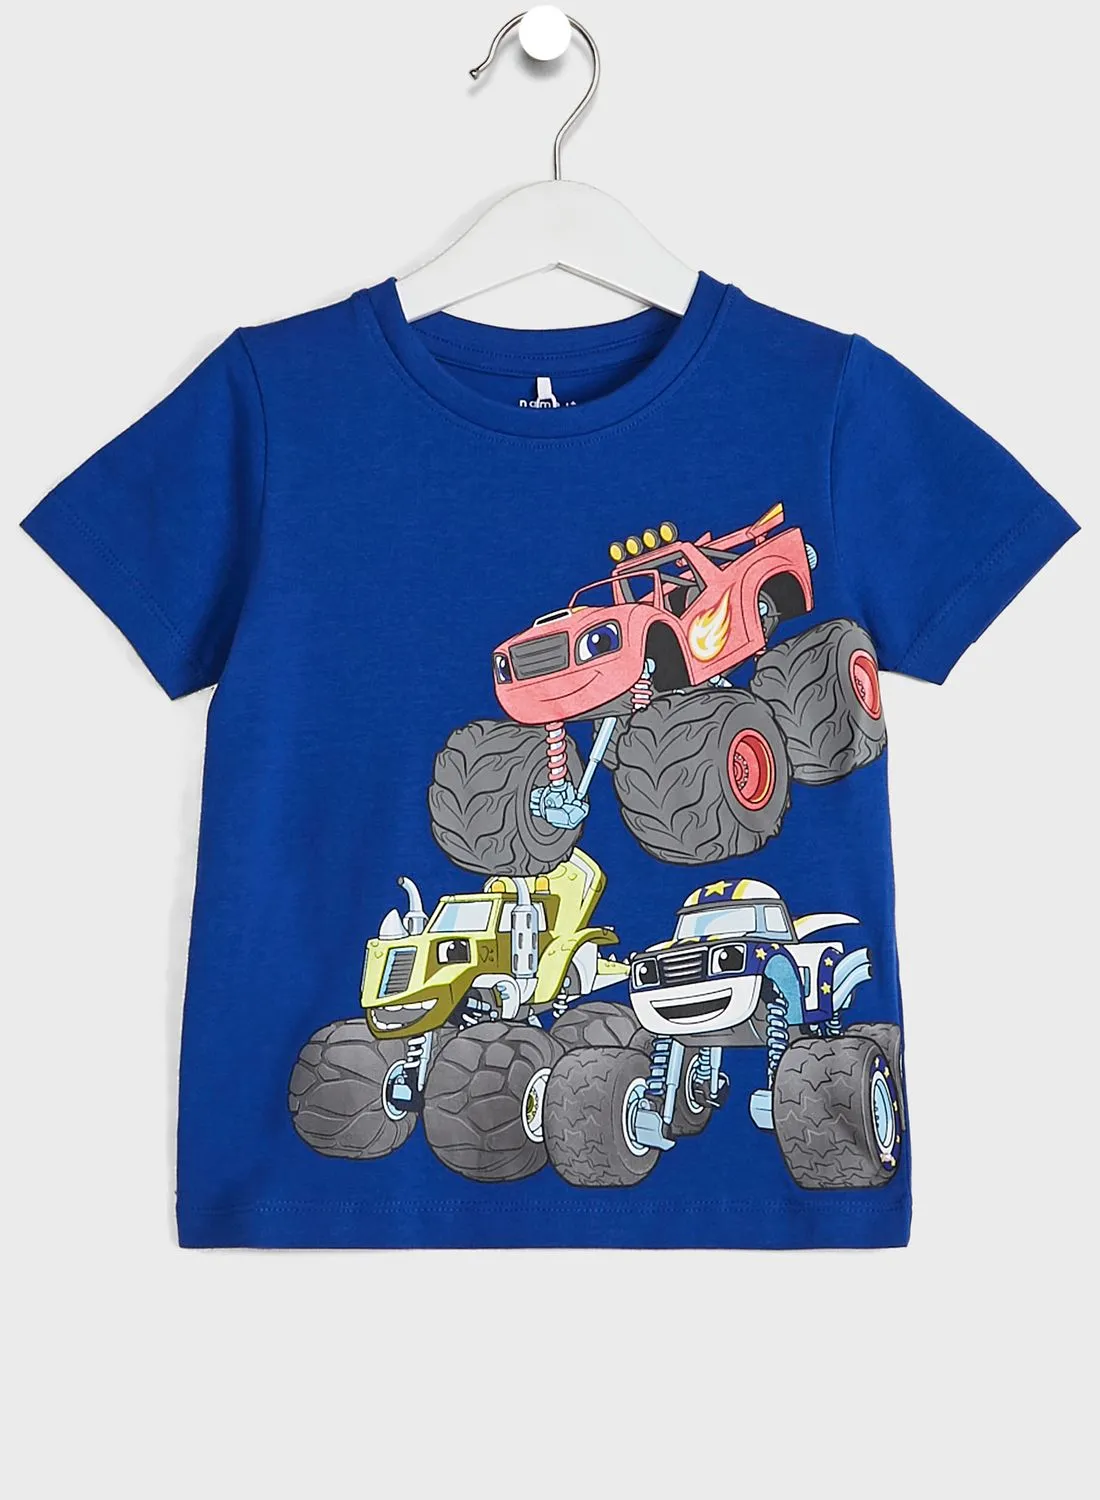 NAME IT Kids Monster Truck T-Shirt